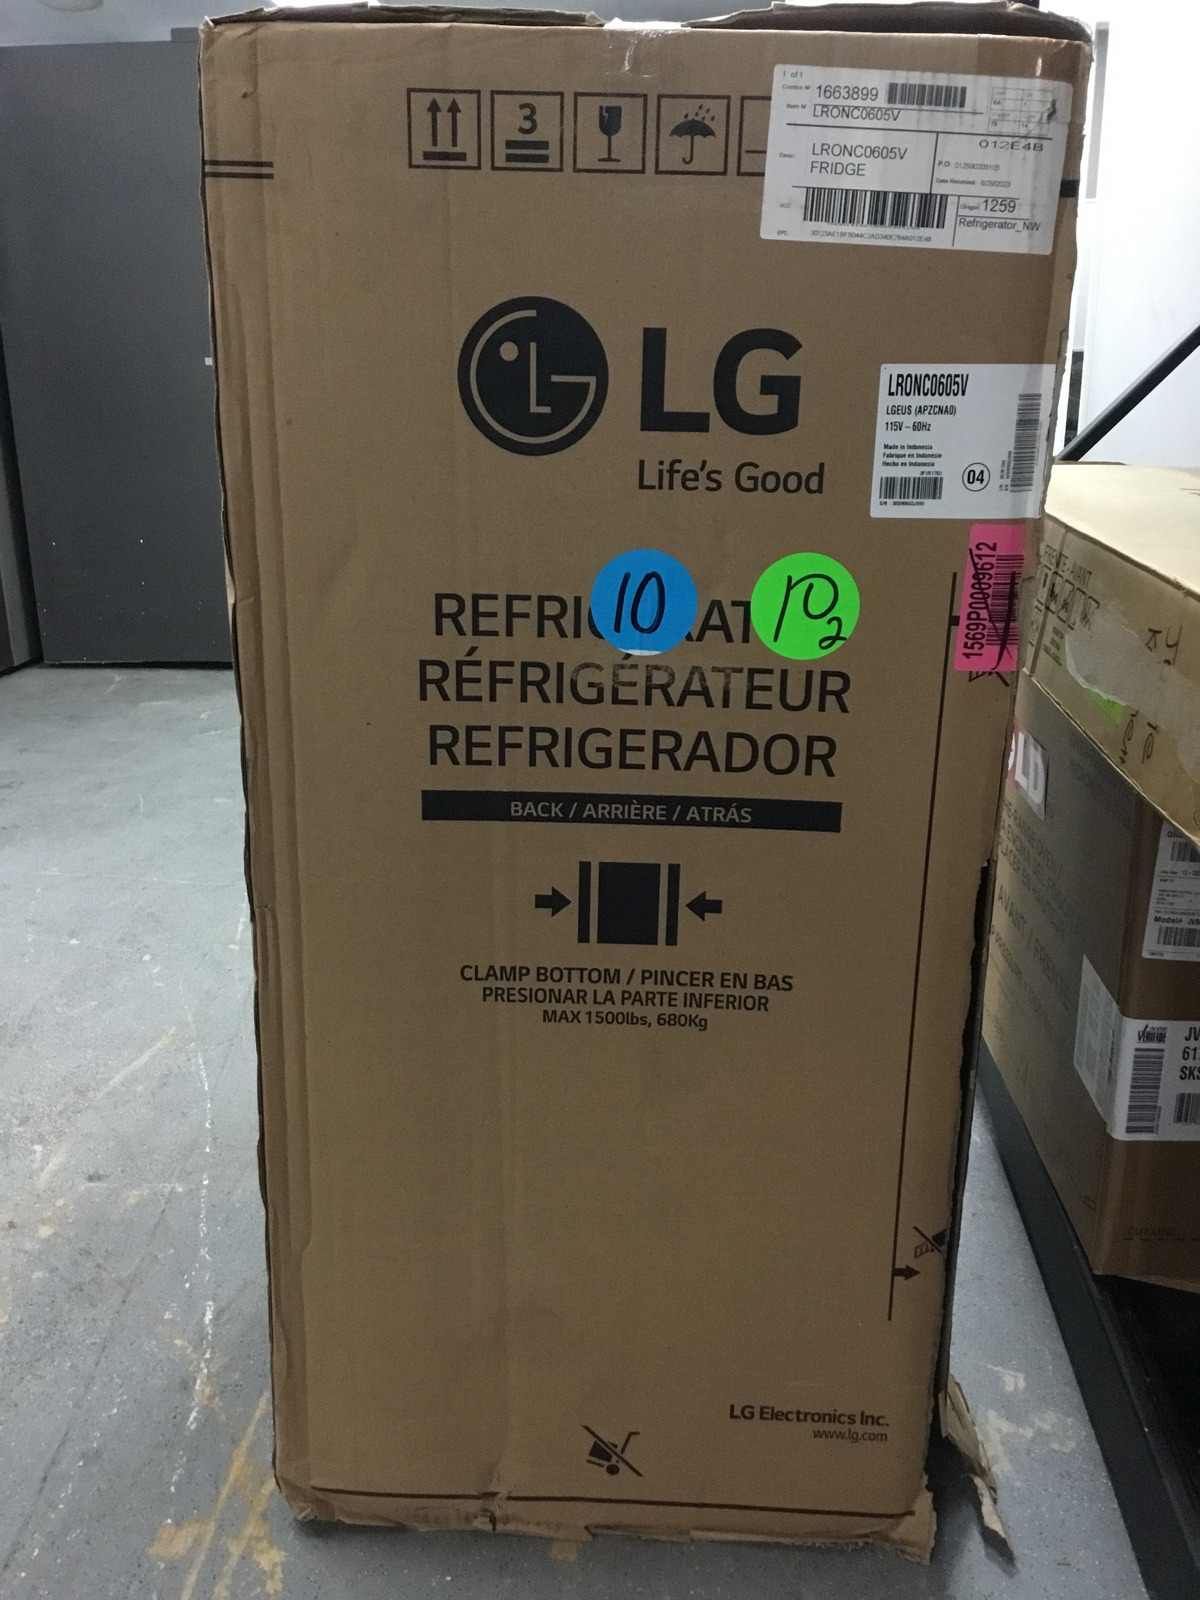 Lg - Mini Fridges (Refrigerator) - LRONC0605V